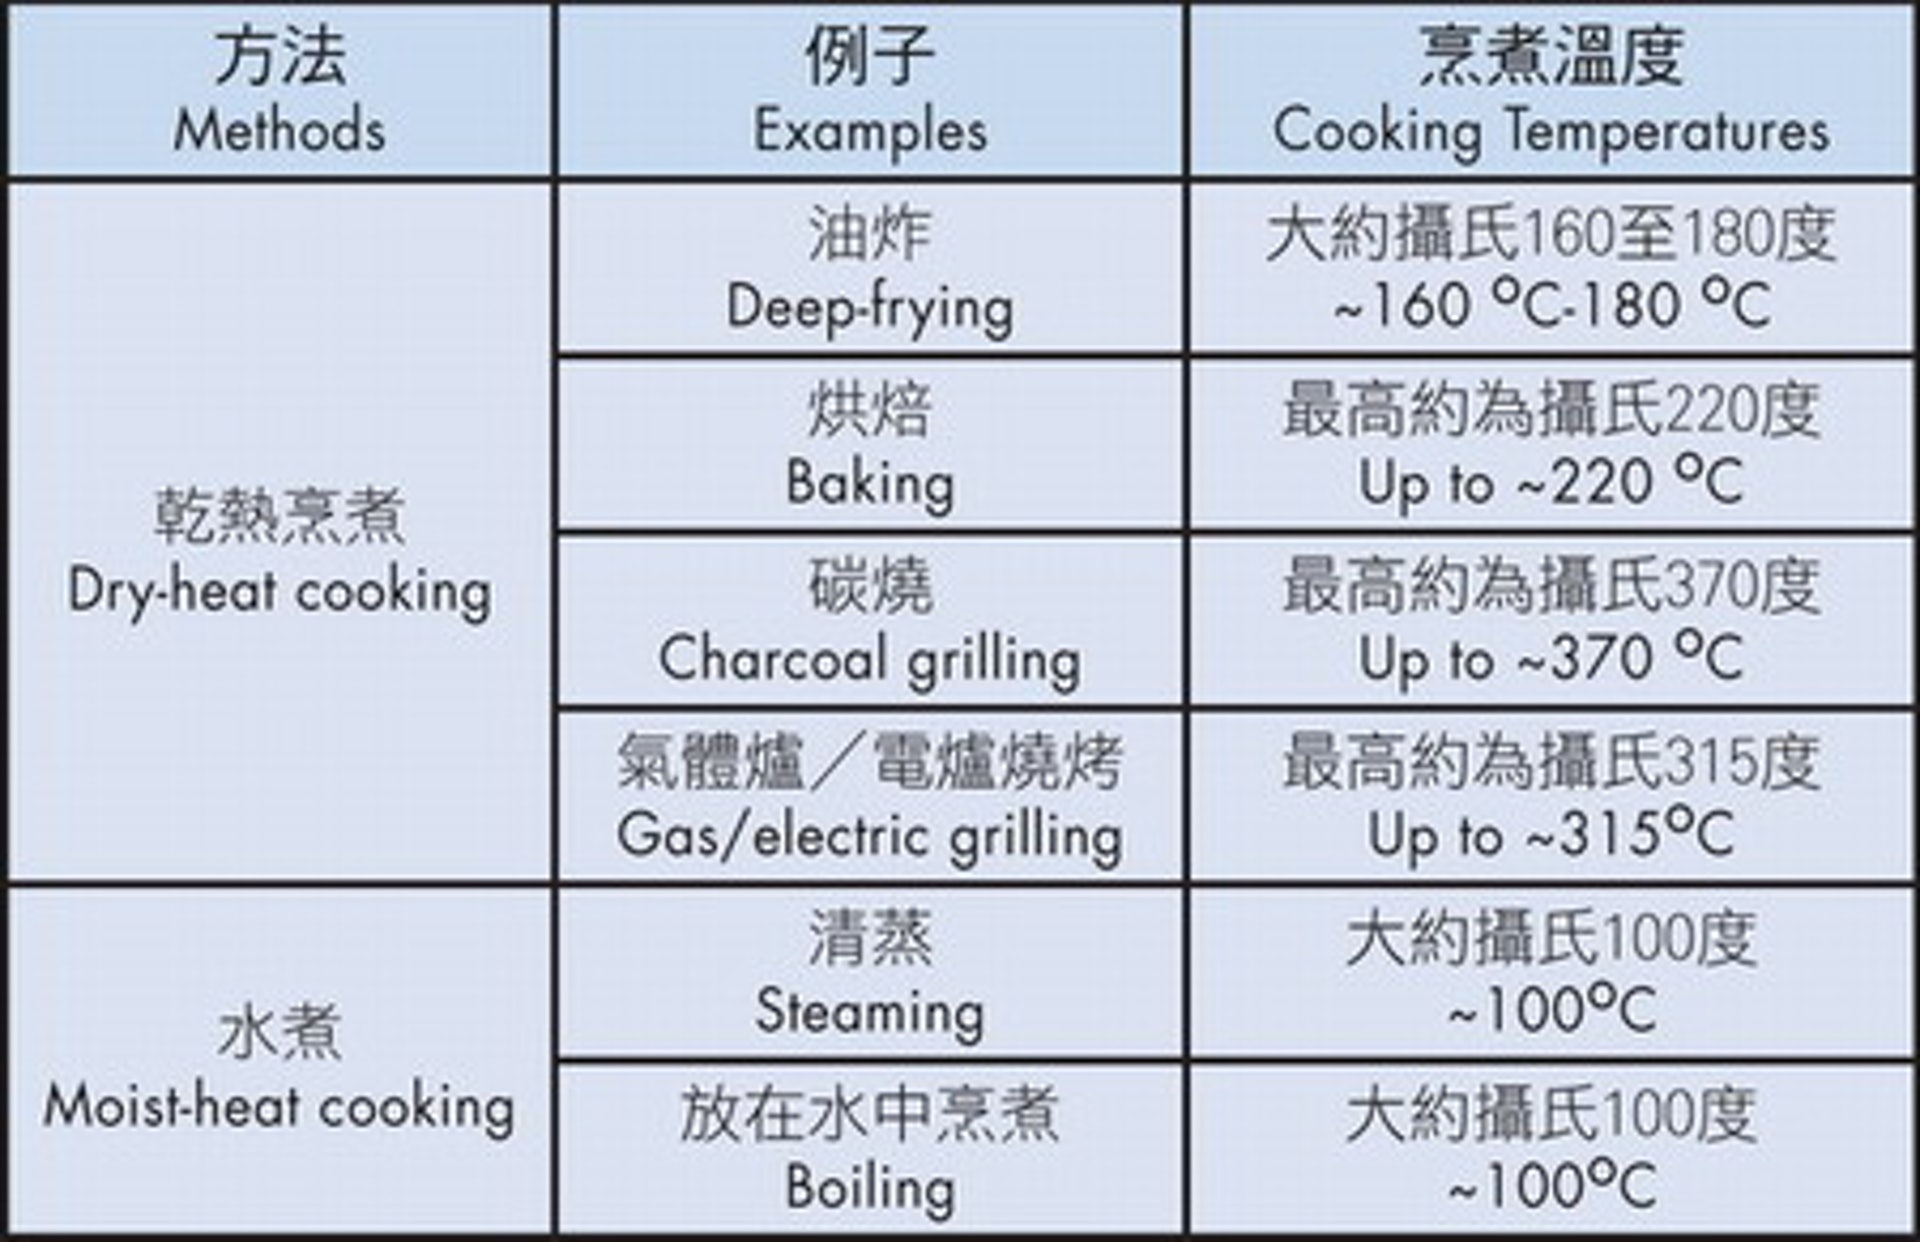 如果烹調溫度達至 200°C 至 250°C ，釋出雜環胺量會大幅增加。因此以煎、炸、烤、焗處理的肉類當中的雜環胺含量，會較以蒸、煮、燉處理的肉類為多。（圖片：食安中心）